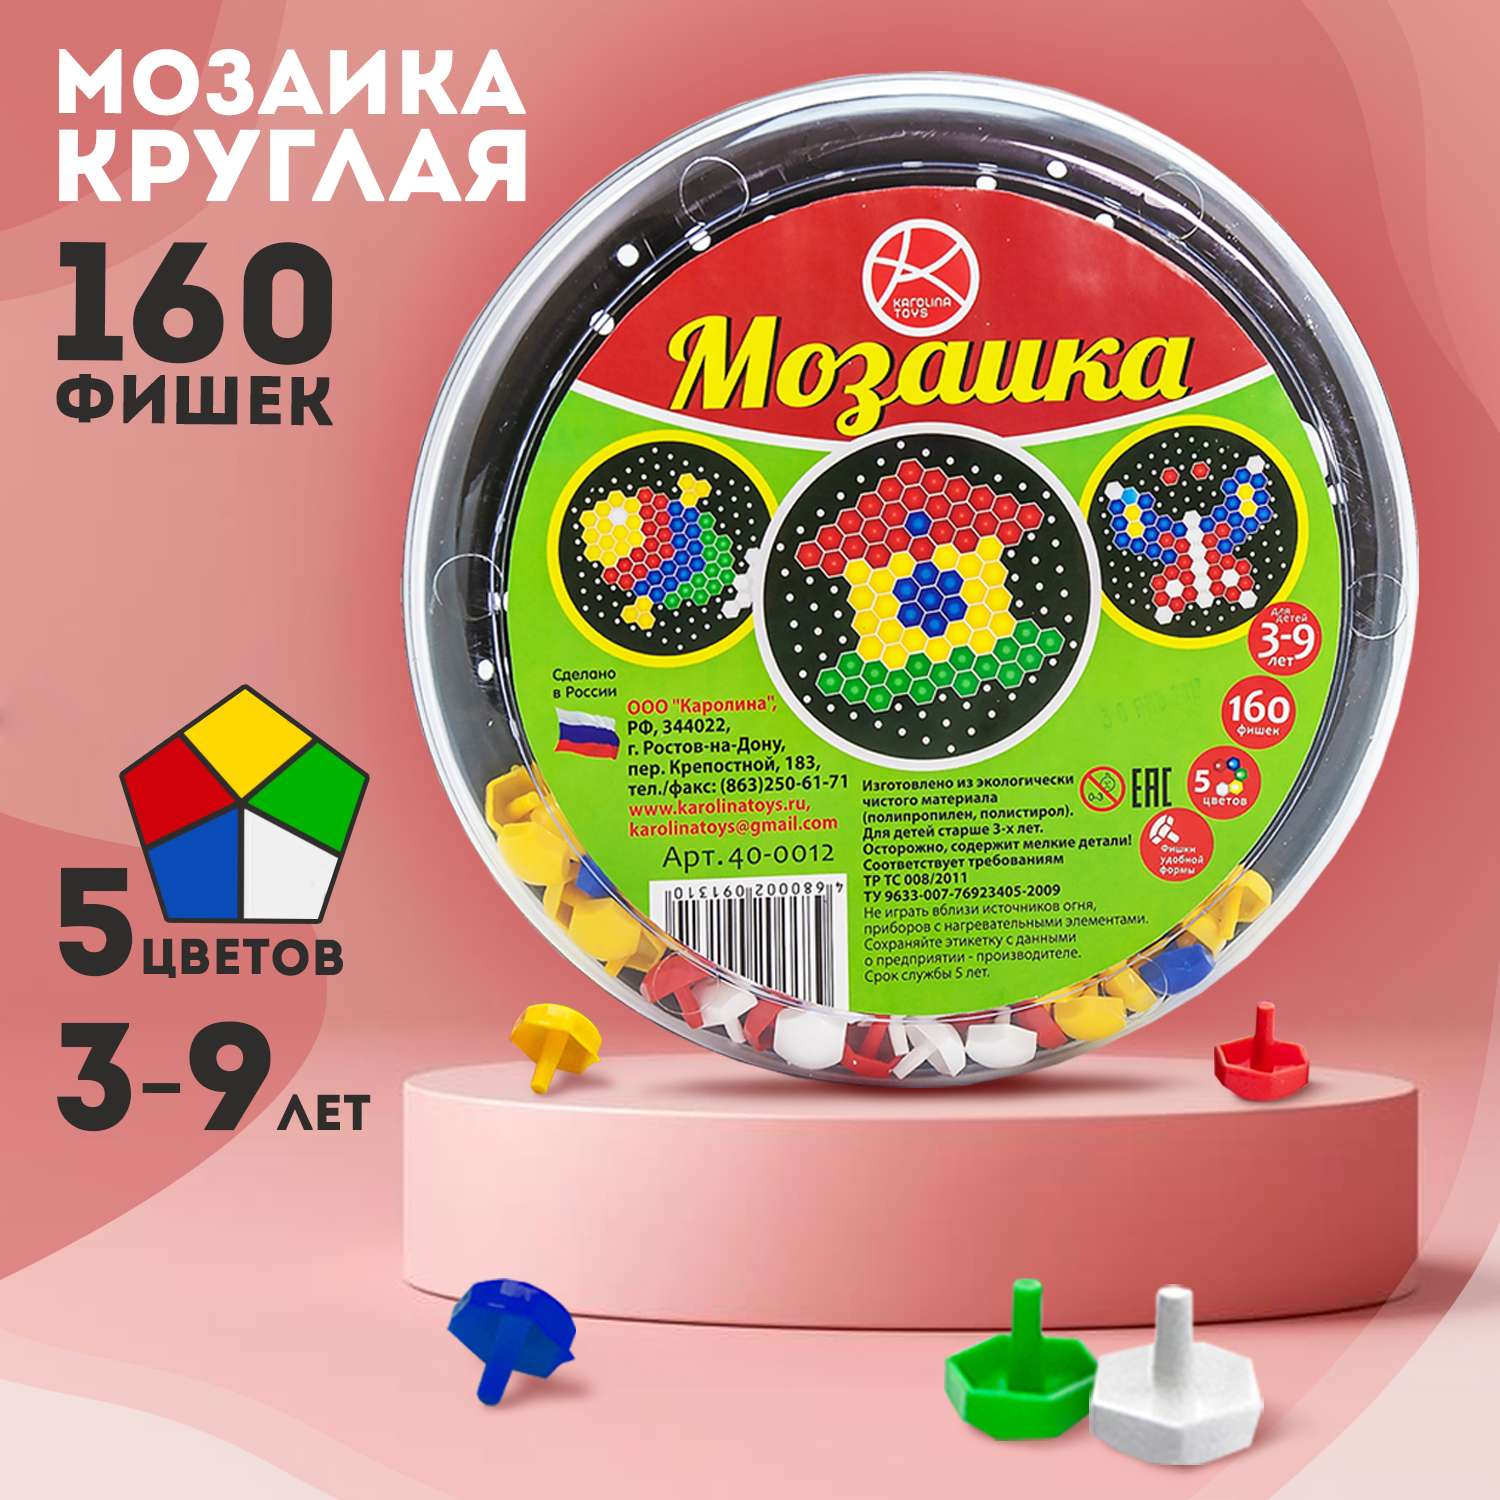 Мозаика Karolina toys круглая 160 фишек пластмассовая - фото 2